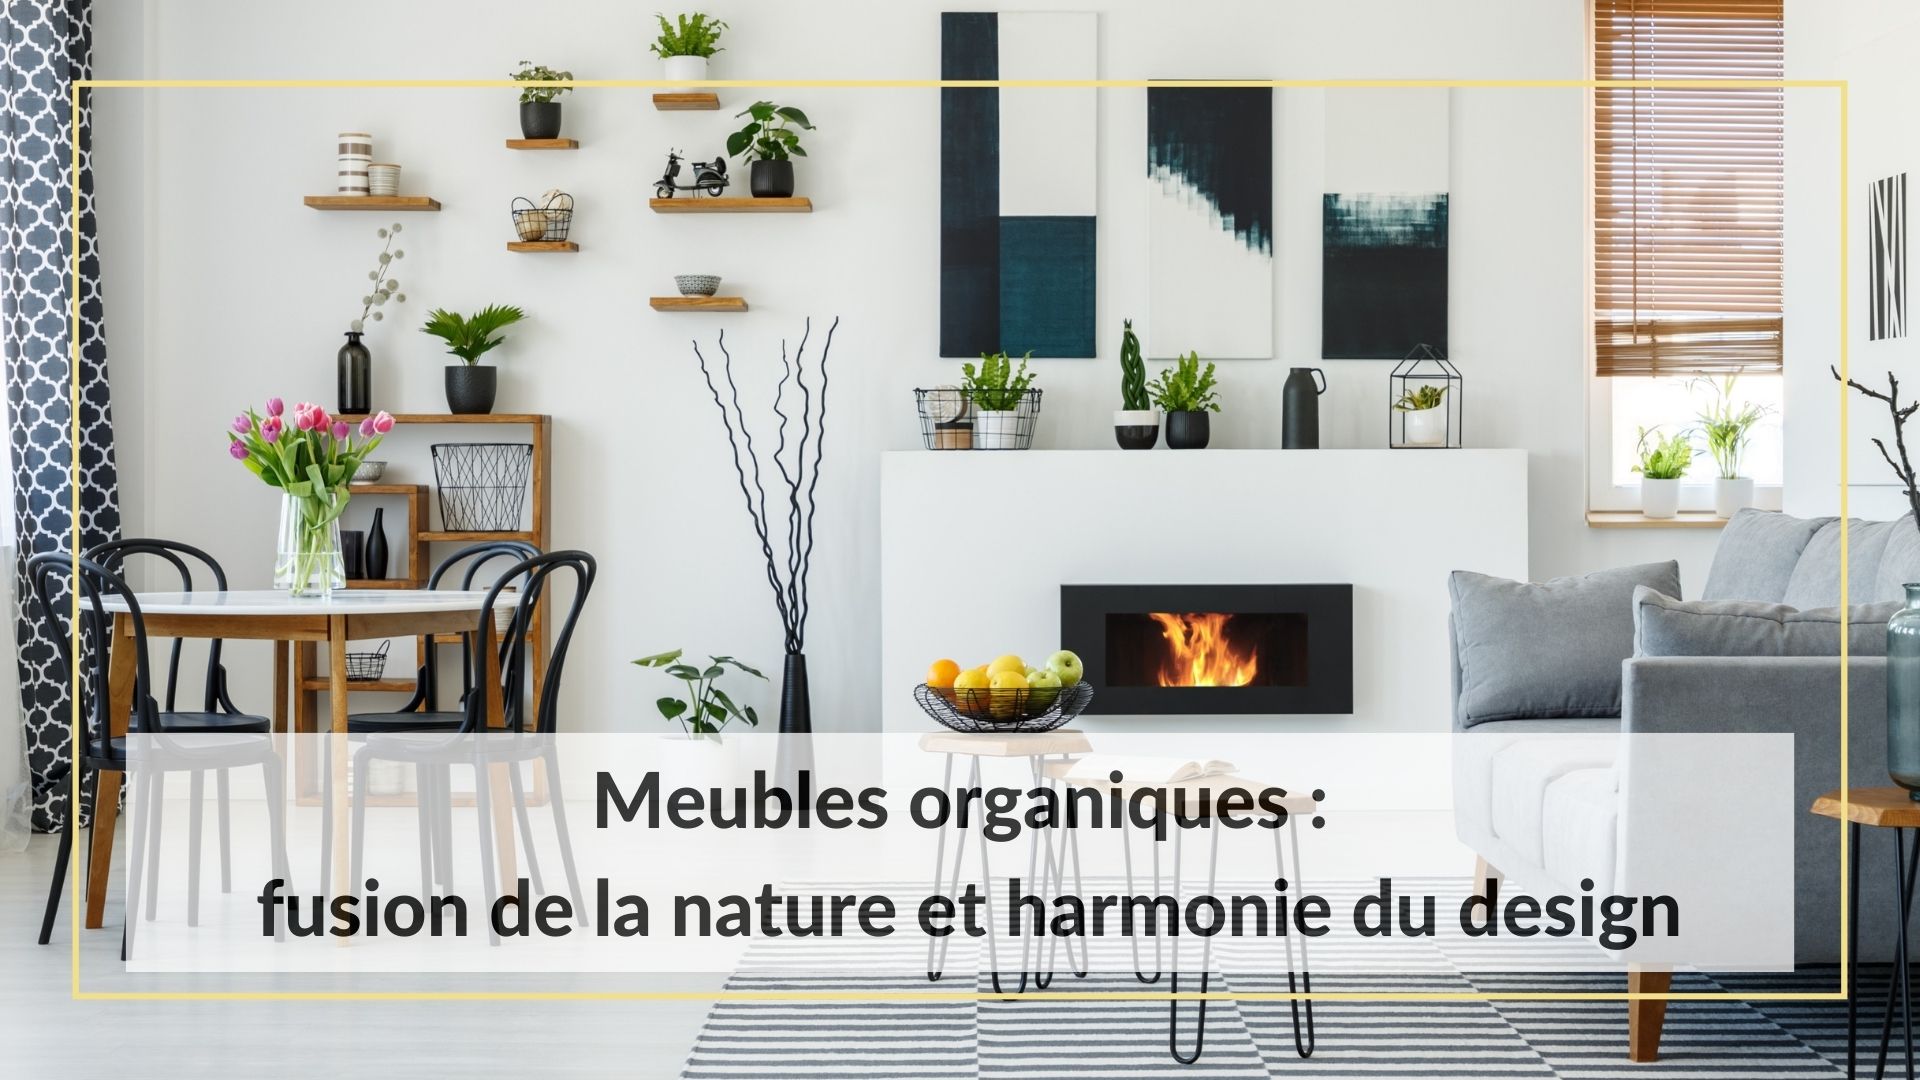 Meubles organiques : fusion de la nature et harmonie du design